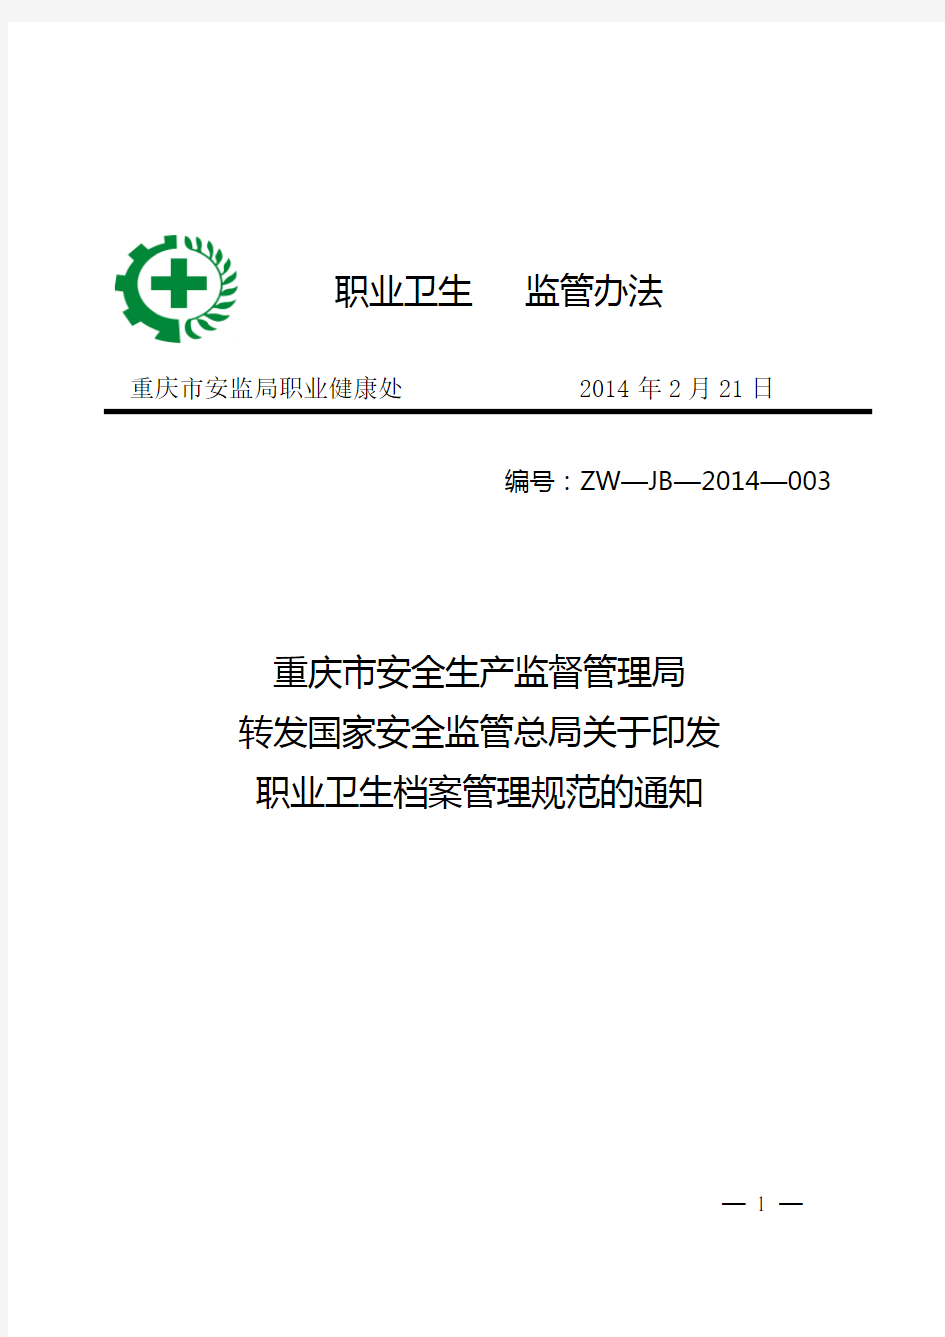 《职业卫生档案管理规范》(安监总厅安健〔2013〕171号)